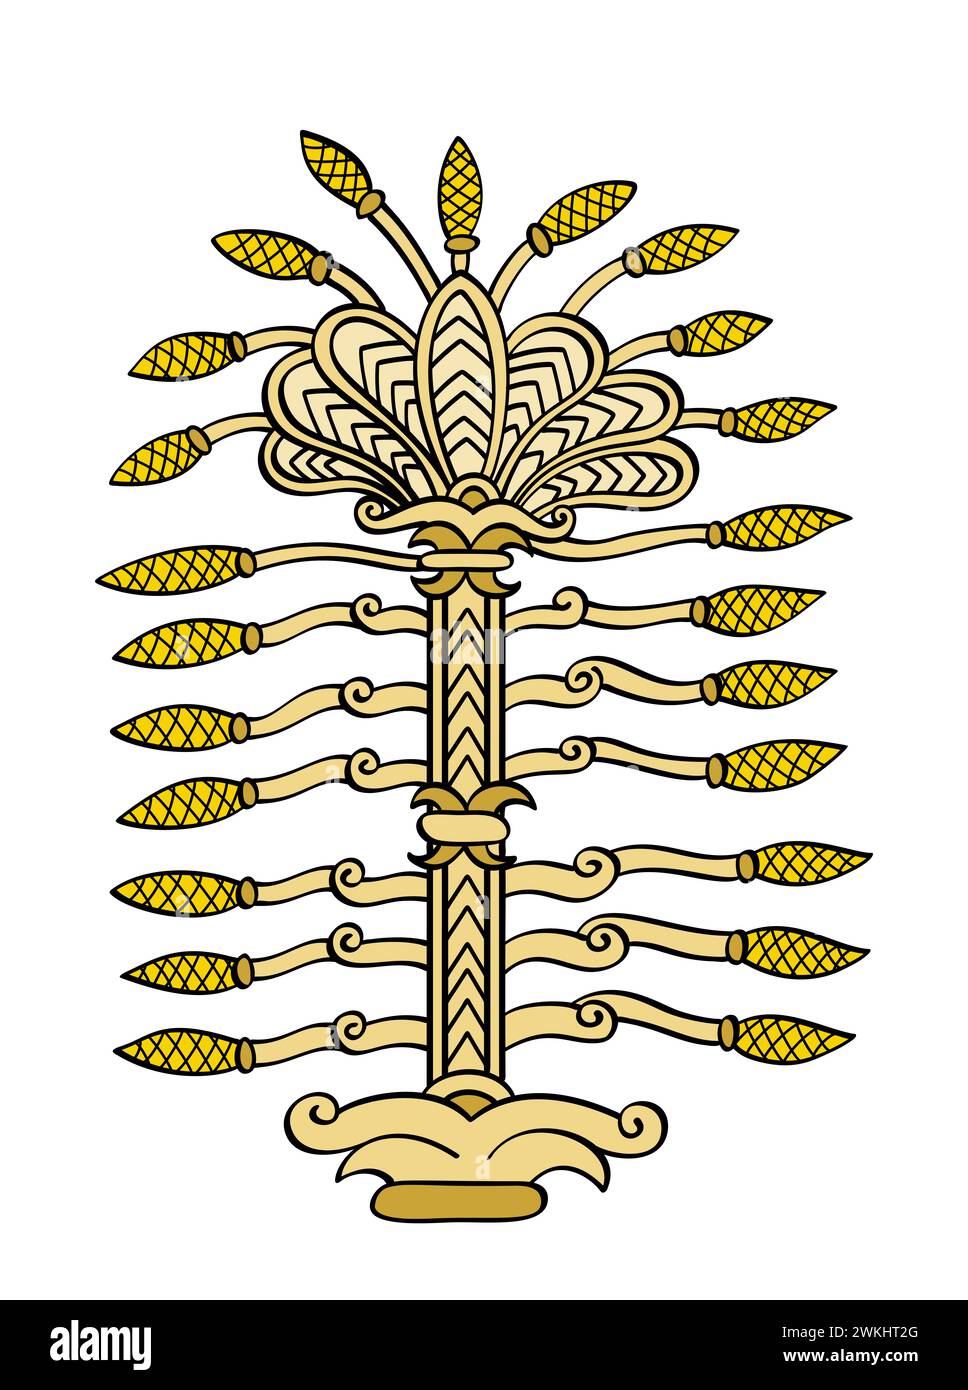 Arbre de vie, symbole d'un arbre sacré dans l'ancienne Mésopotamie, tel qu'il a été représenté sur un pectoral du roi Assurbanipal. Symbole religieux important. Banque D'Images